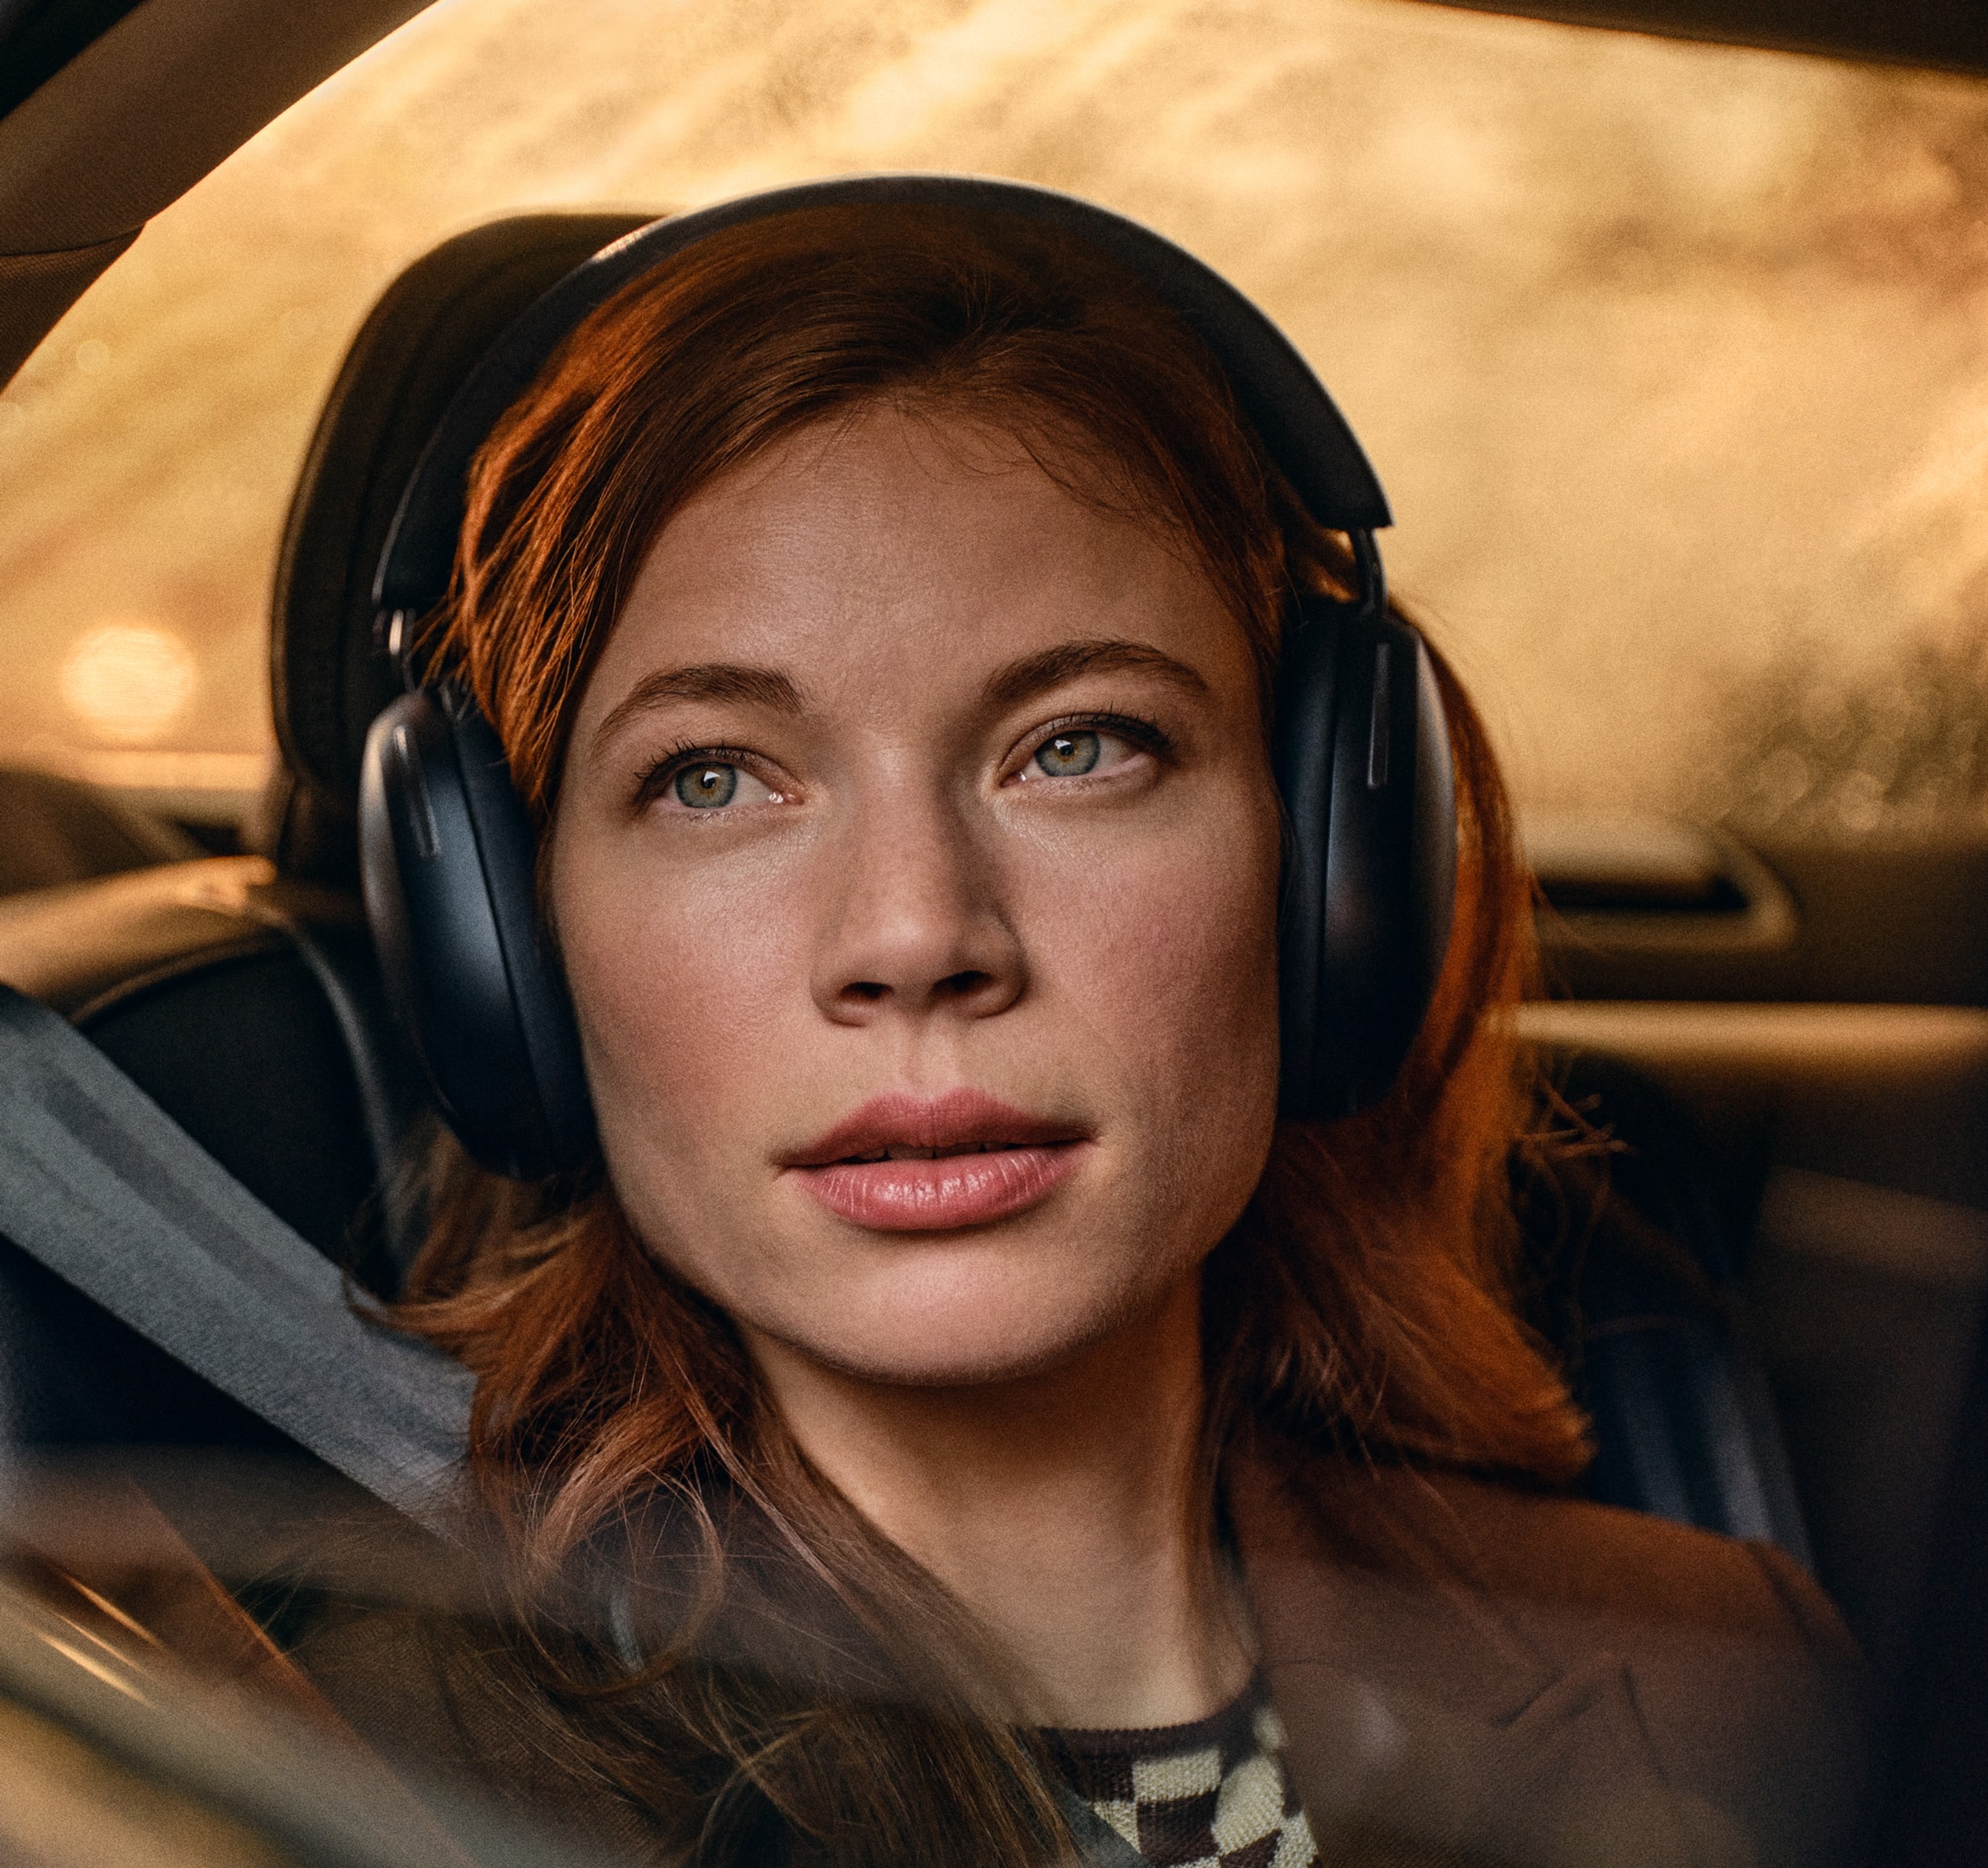 Vrouwelijke gebruiker in een auto met een zwarte Sonos Ace koptelefoon op